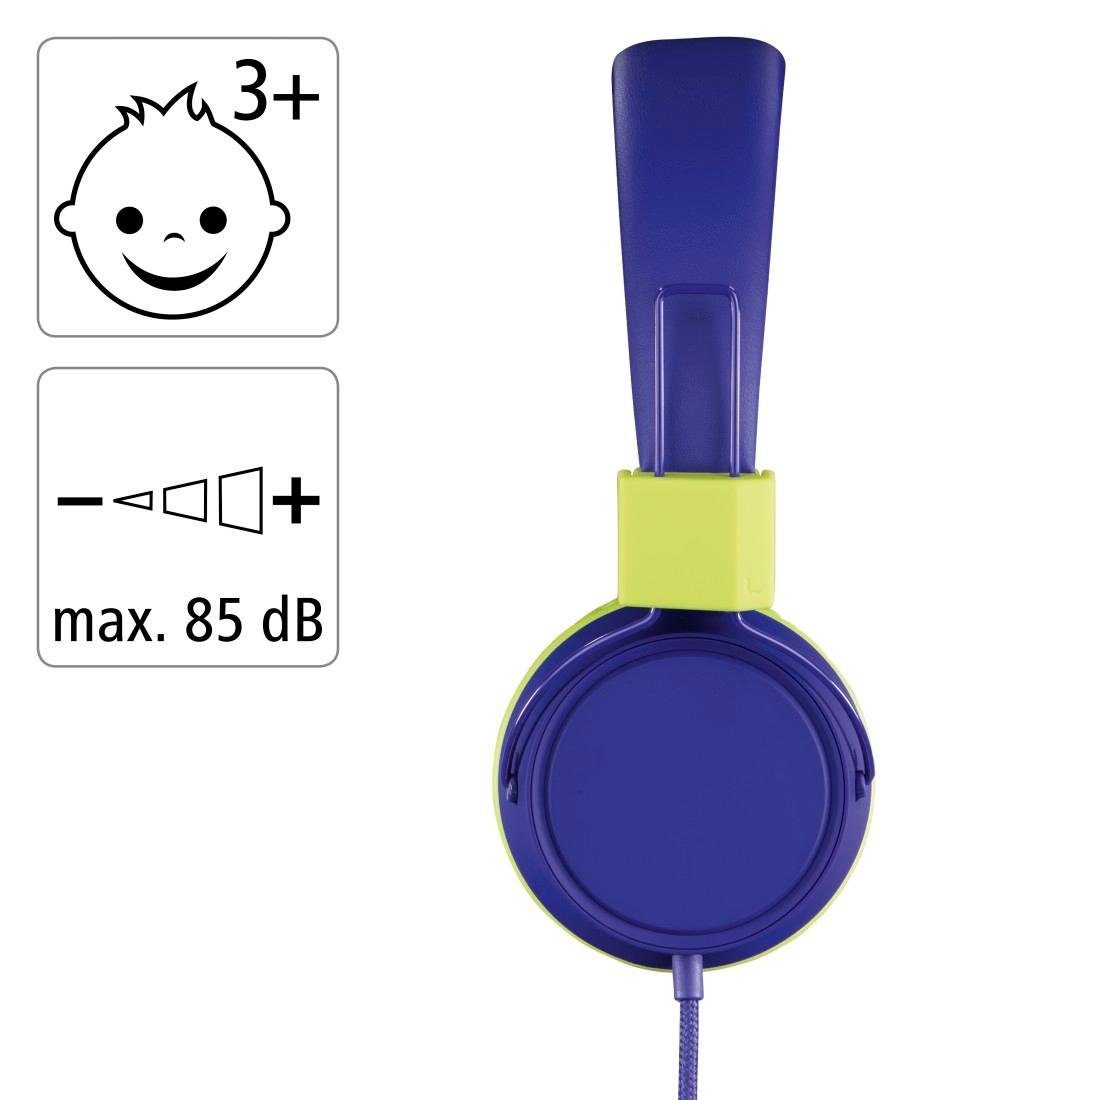 Thomson Kinderkopfhörer mit Kabel On-Ear-Kopfhörer Kopfhöreranschluss (größenverstellbar weiterer leicht Lautstärkebegrenzung On-Ear, blau möglich) zusammenfaltbar, 85dB auf